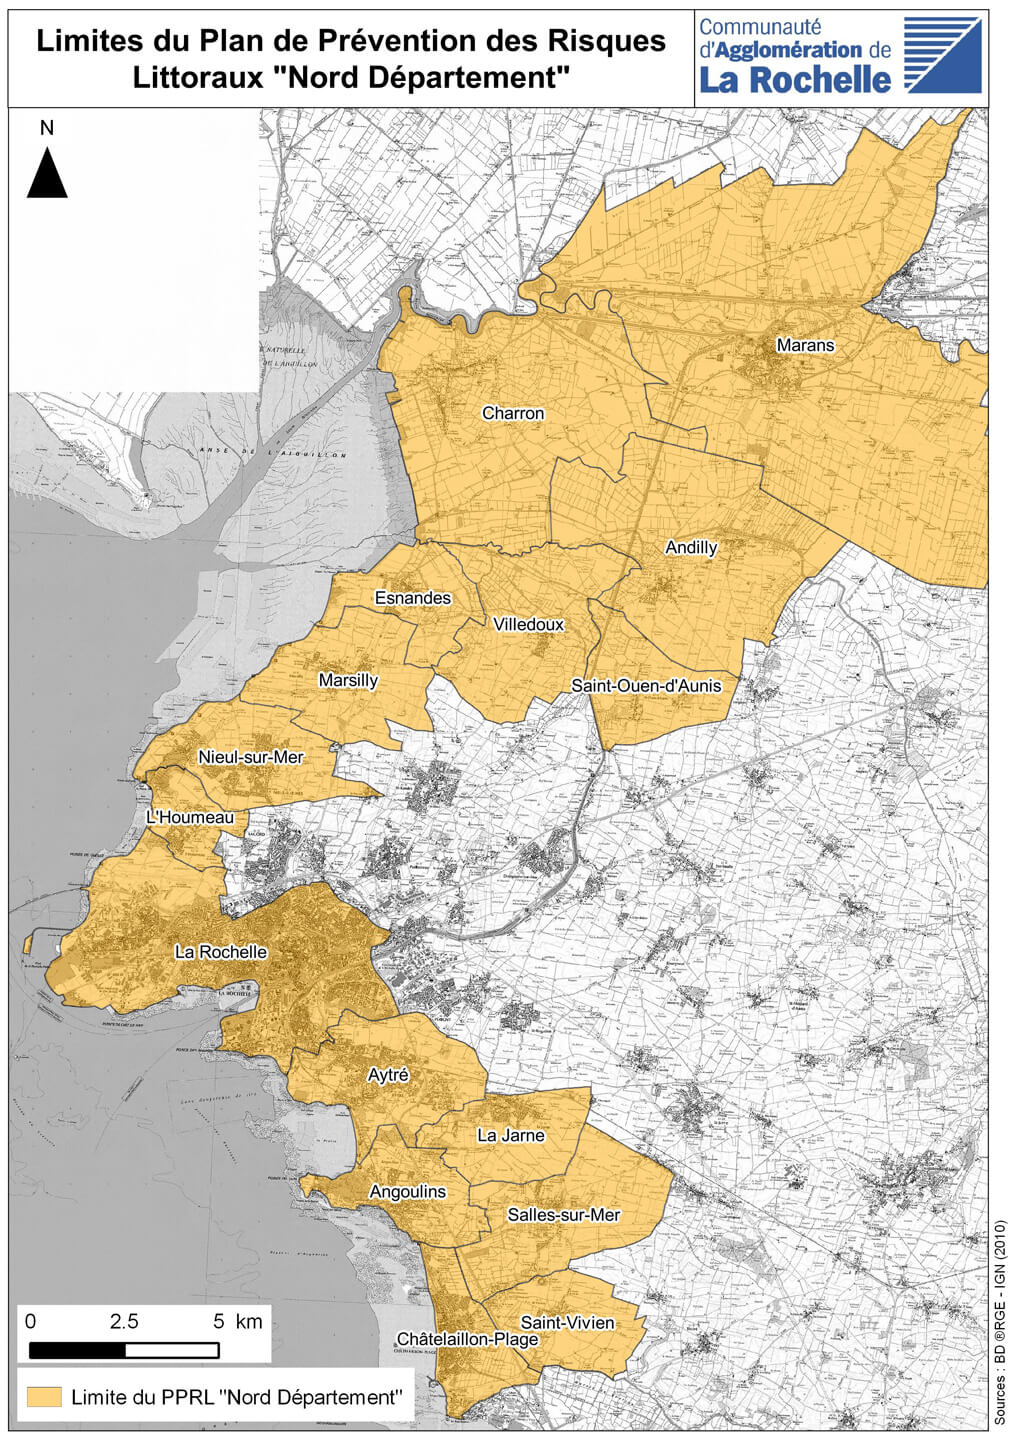 Carte des communes concernées par le PPRL. Du nord au sud : Marans, Charron, Andilly, Esnandes, Villedoux, Saint-Ouen d'Aunis, Marsilly, Nieul-sur-Mer, L'Houmeau, La Rochelle, Aytré, Angoulins, La Jarne, Salles-sur-Mer